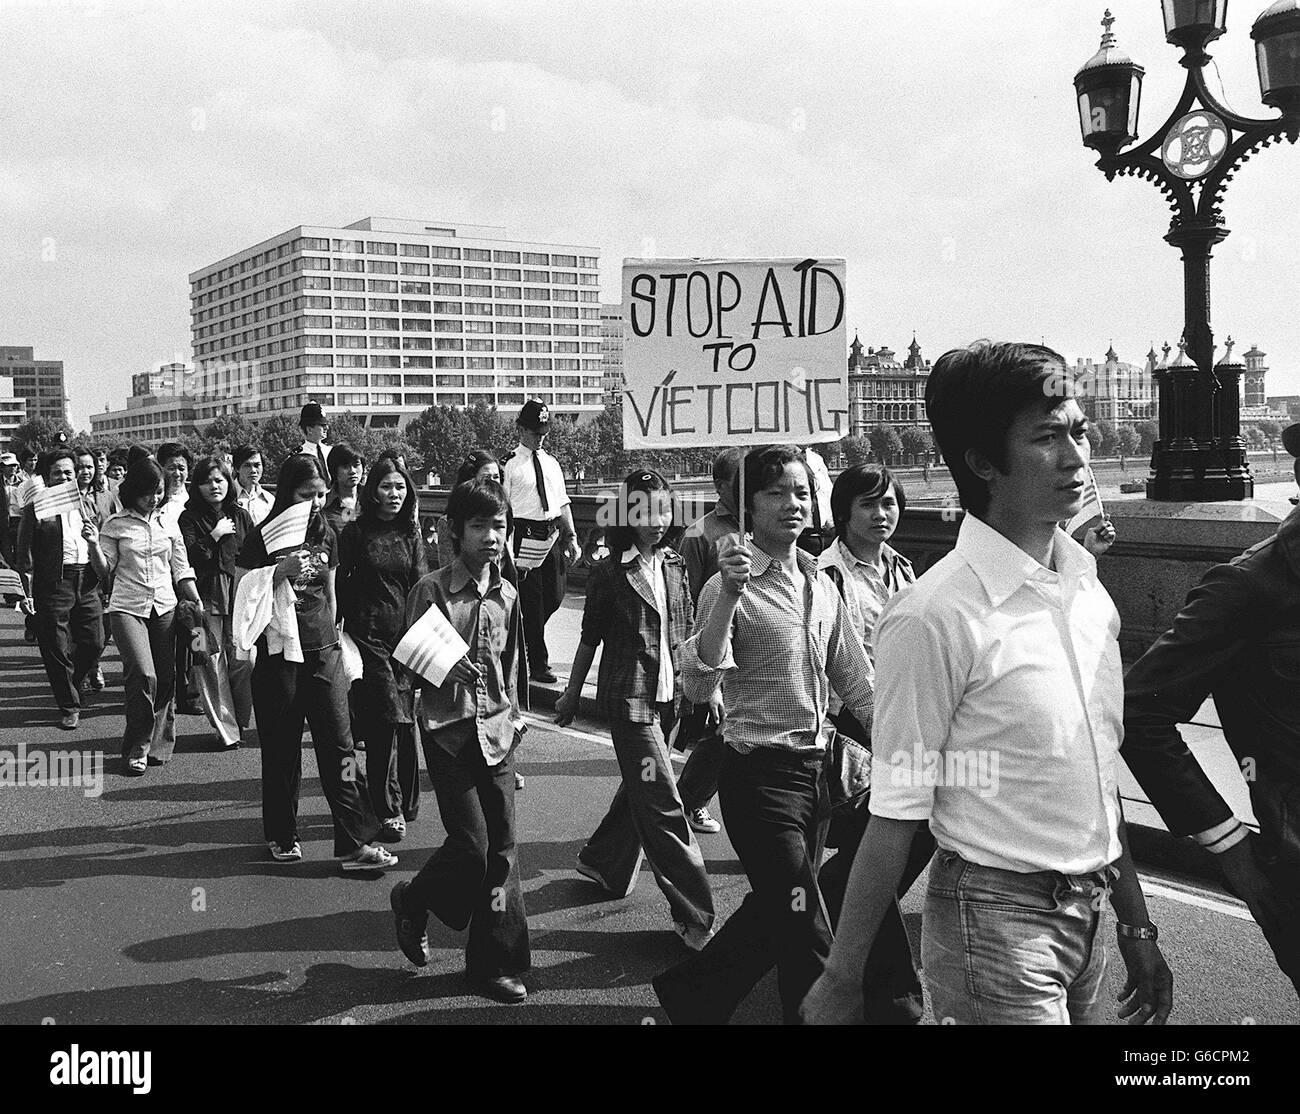 Vietmanessische Bootsleute marschieren, um dem Premierminister in der Downig Street 10 eine Petition vorzulegen, in der sie die Regierung auffordern, die Ausweisung Vietnams aus der UNO wegen Verletzung der UN-Menschenrechtserklärung zu beantragen. Sie forderte Großbritannien auch auf, die Beziehungen zur Regierung von Hanoi zu ändern. Stockfoto